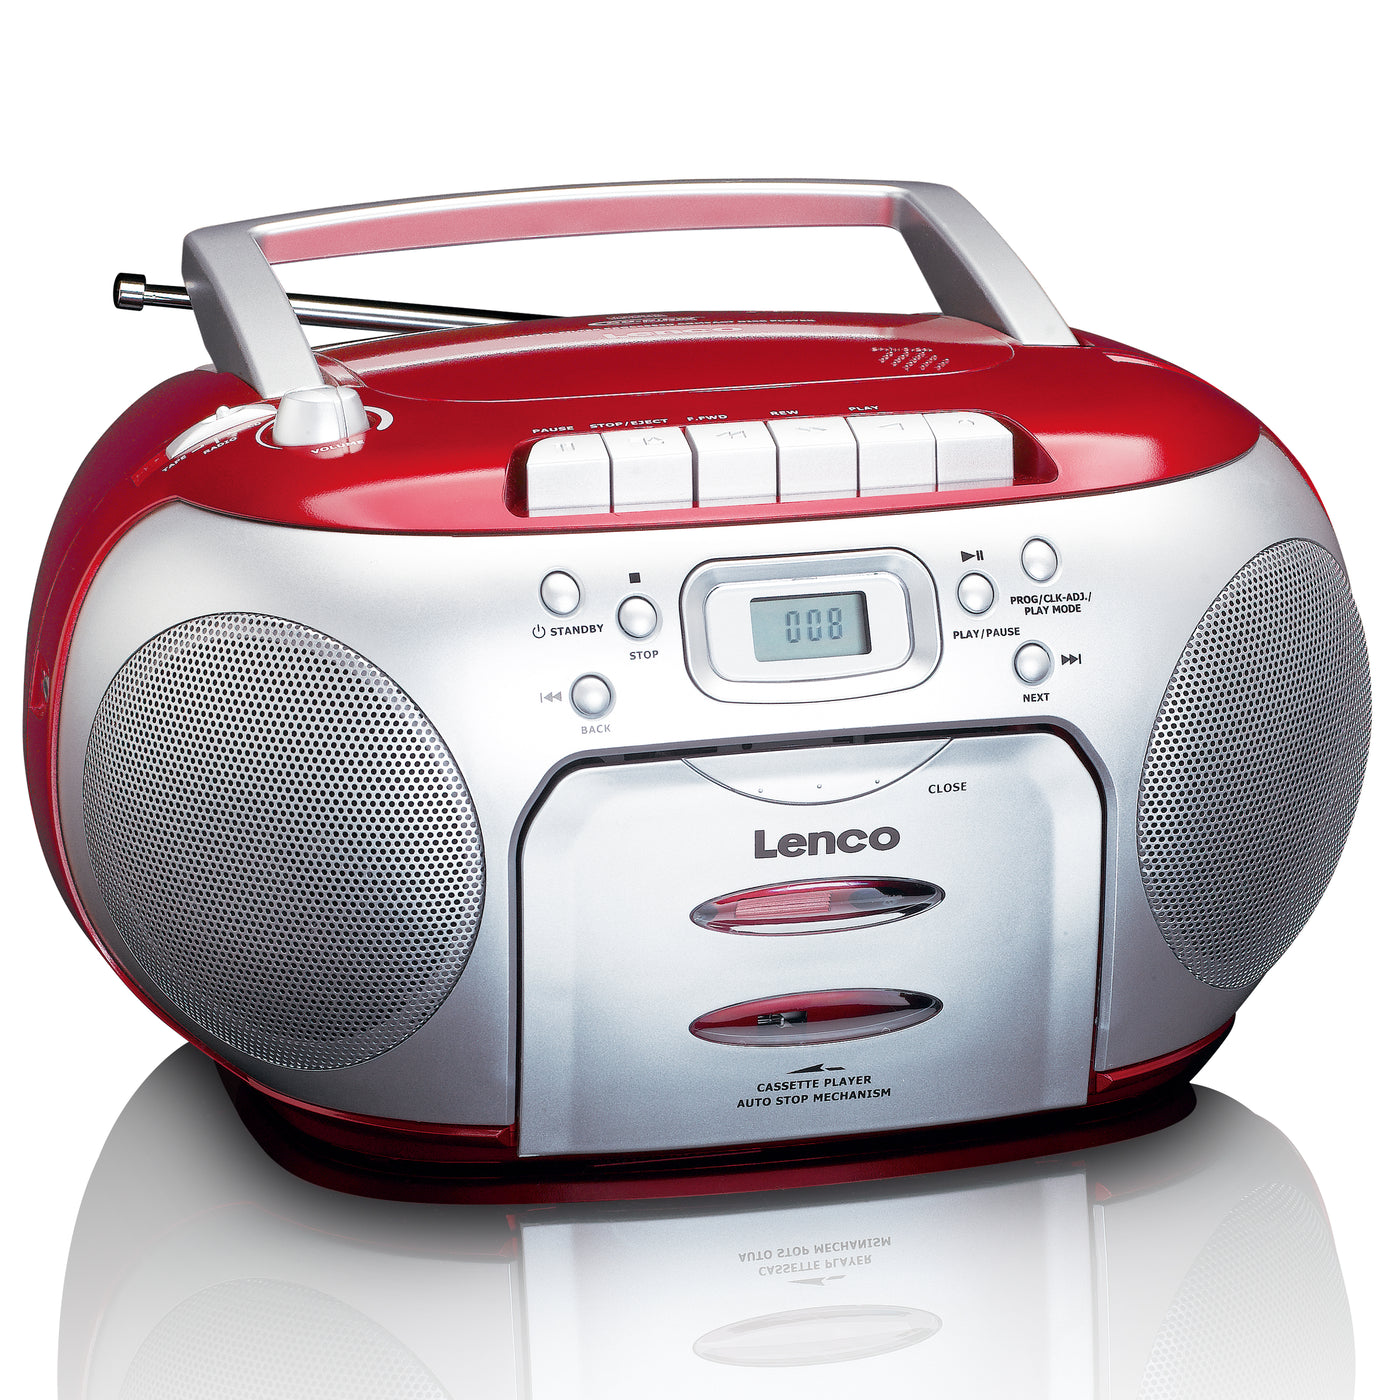 Lenco SCD-420RD - Lecteur CD/radio FM stéréo portable - Rouge